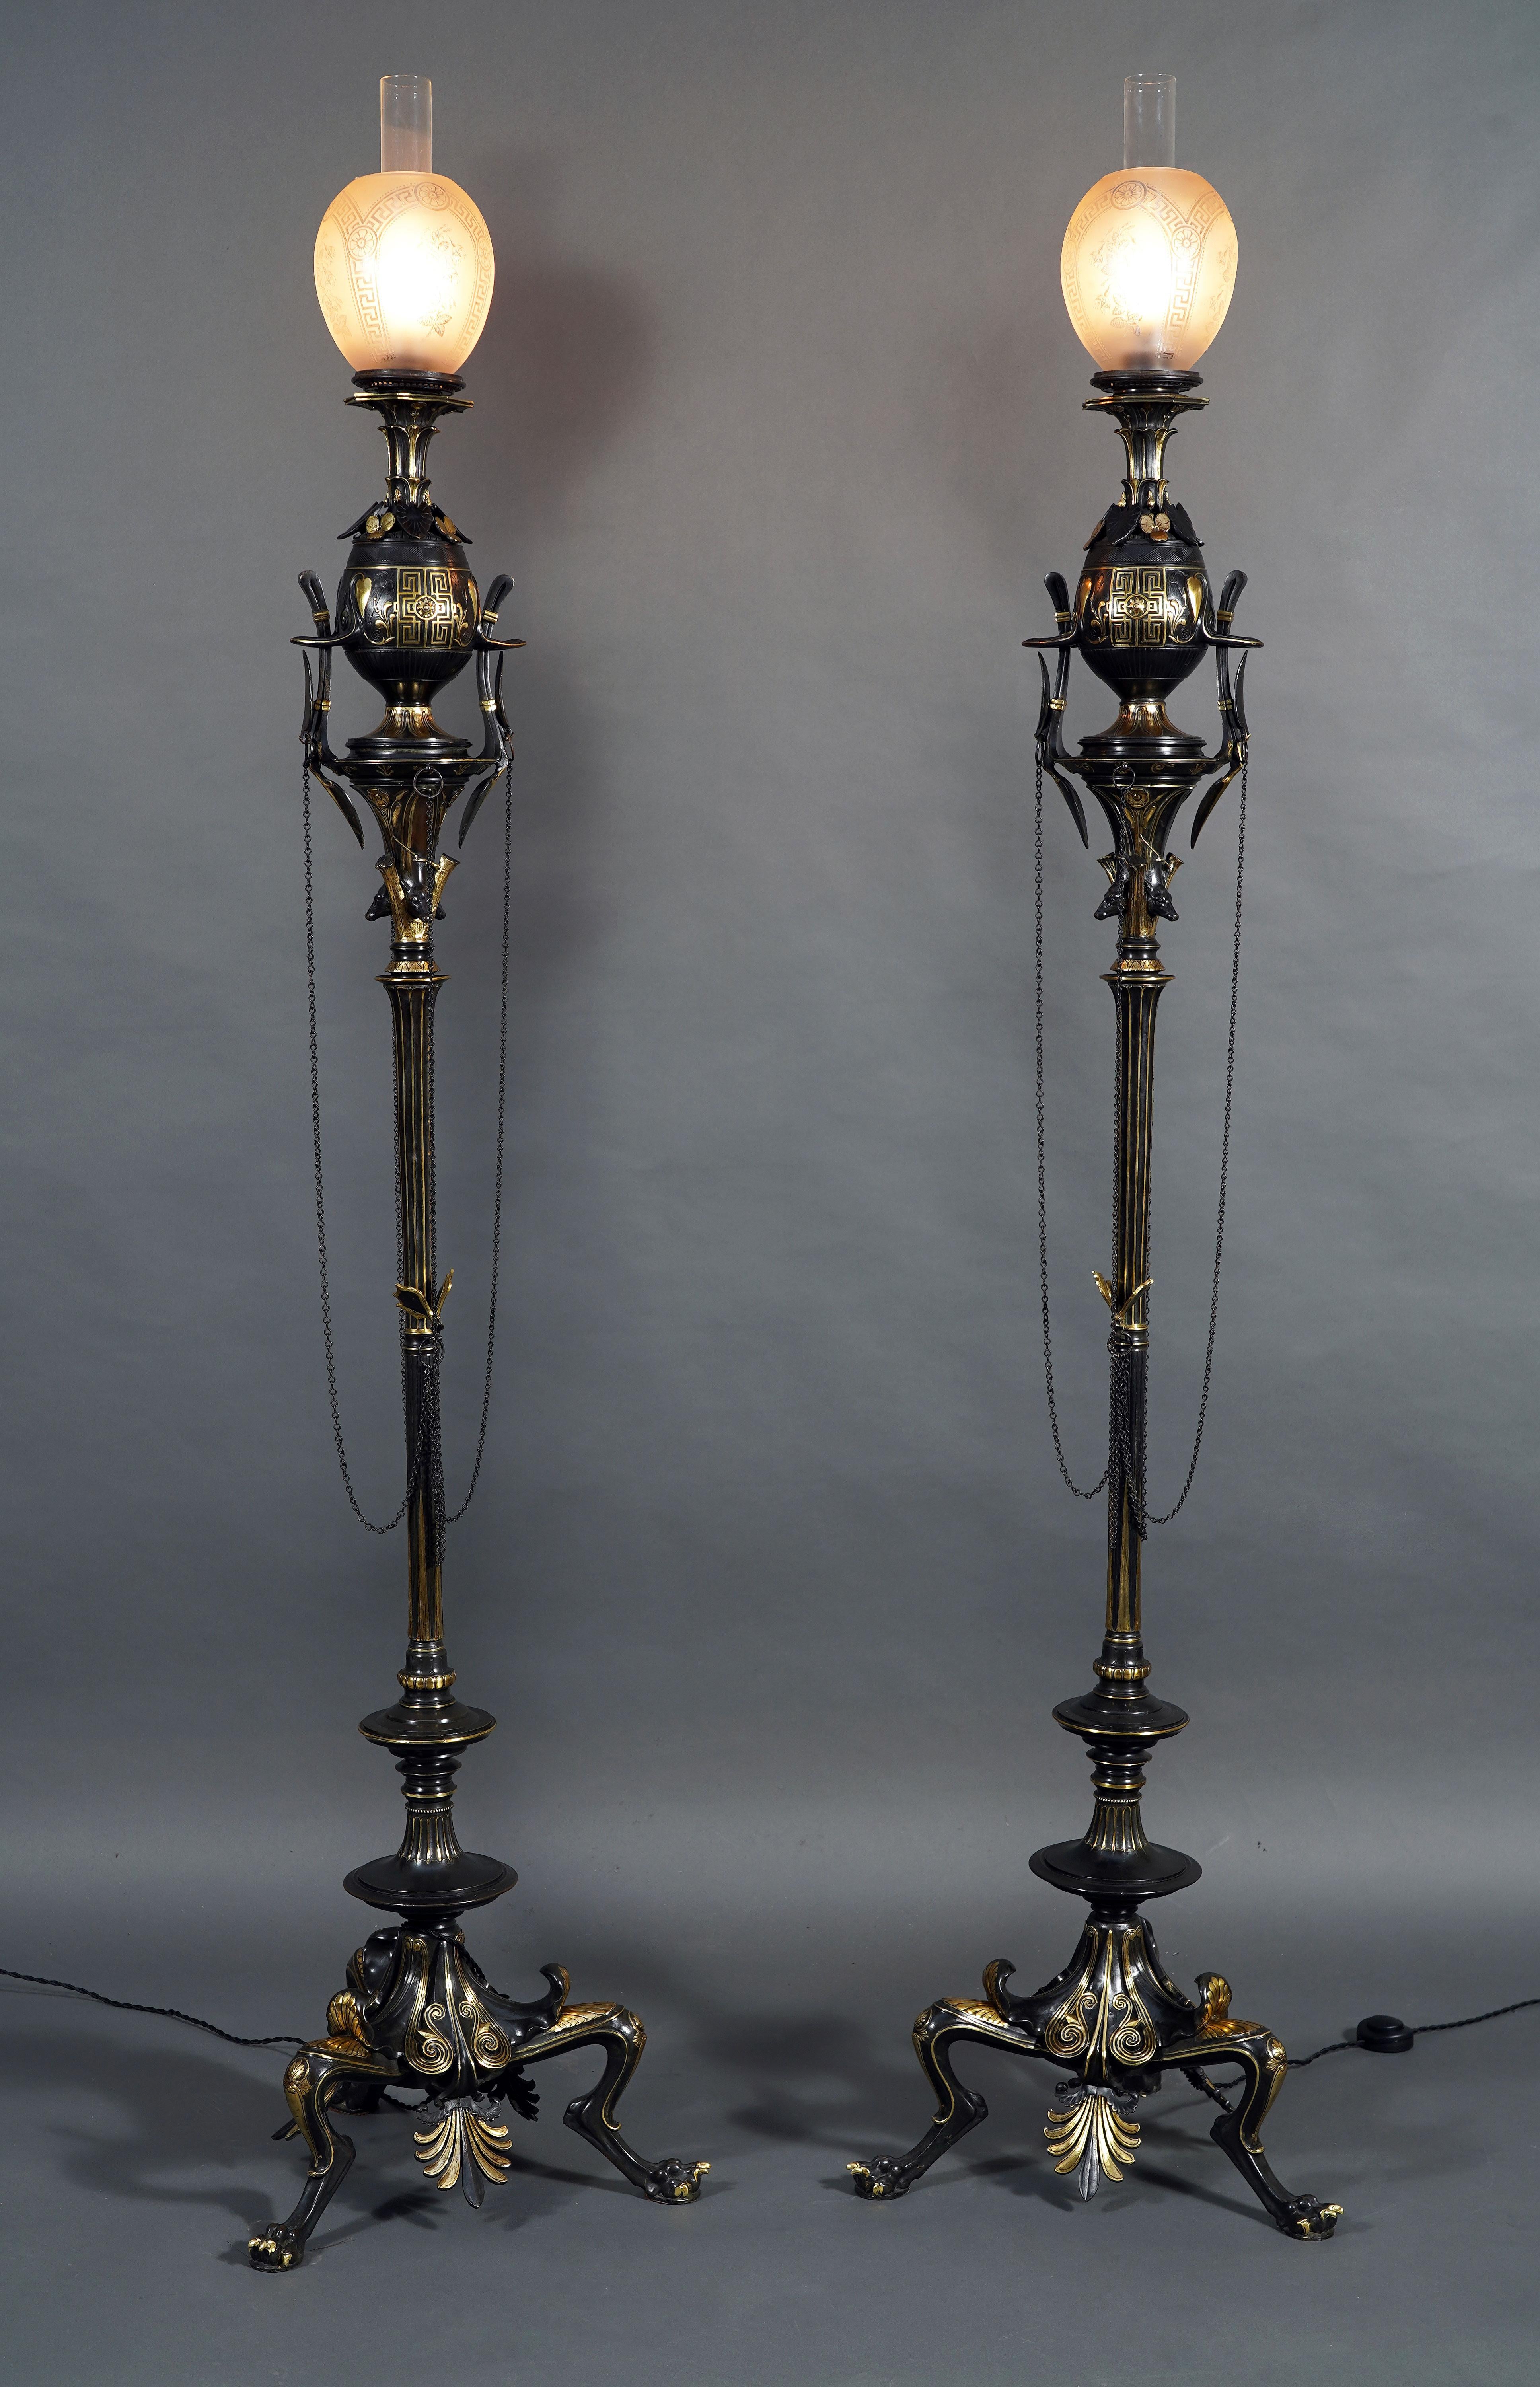 Rare paire de lampadaires de style grec en bronze patiné attribués à G. Servant, chacun surmonté d'un globe en verre dépoli gravé d'étoiles et d'une frise de motifs grecs. Le corps du vase, décoré de motifs de style grec tels que des palmettes, une